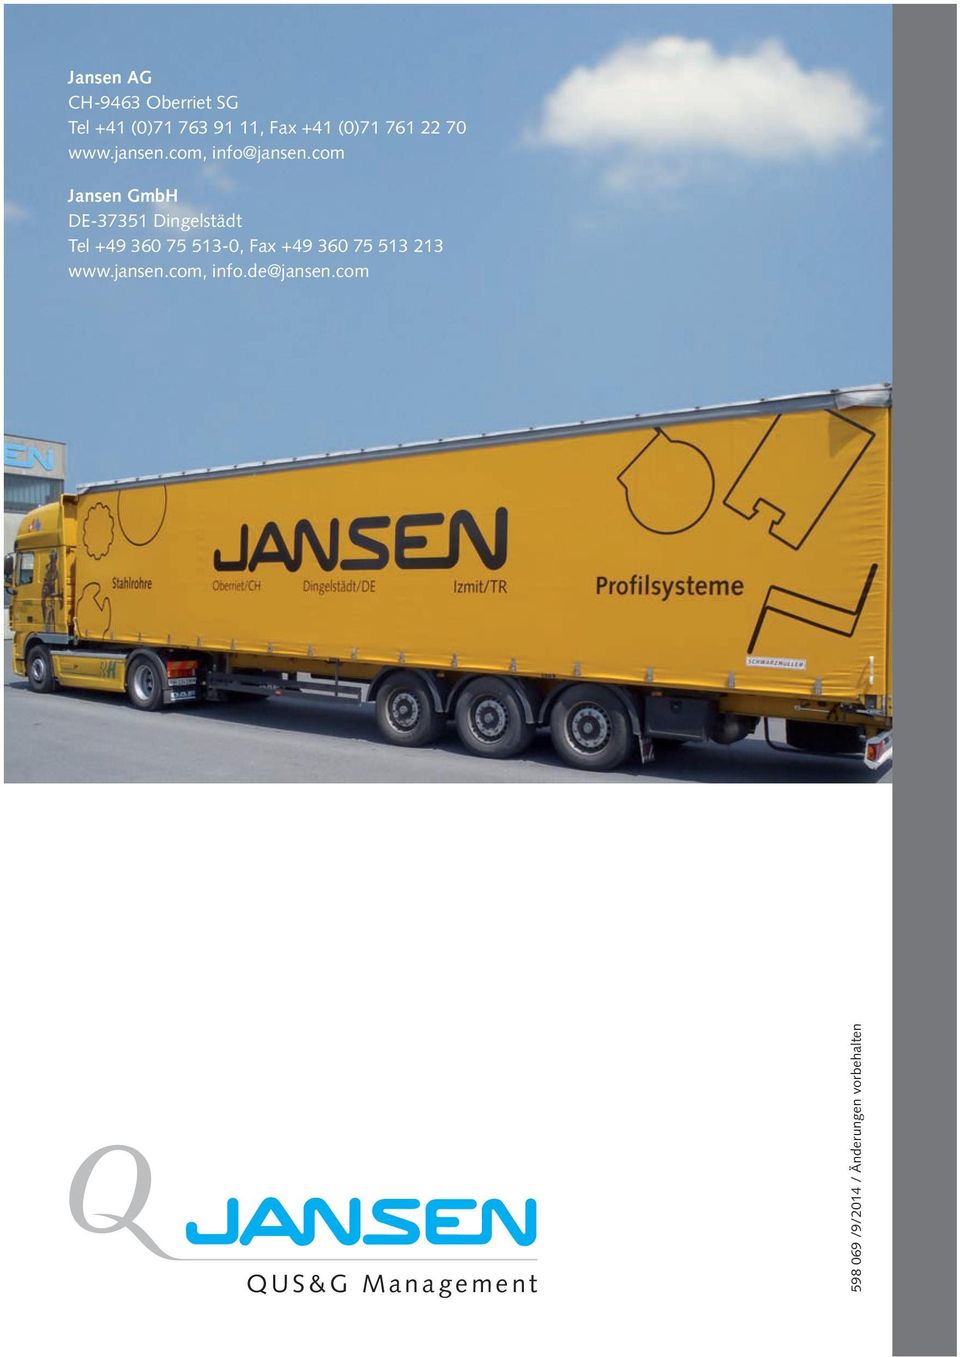 com Jansen GmbH DE-37351 Dingelstädt Tel +49 360 75 513-0, Fax +49 360 75